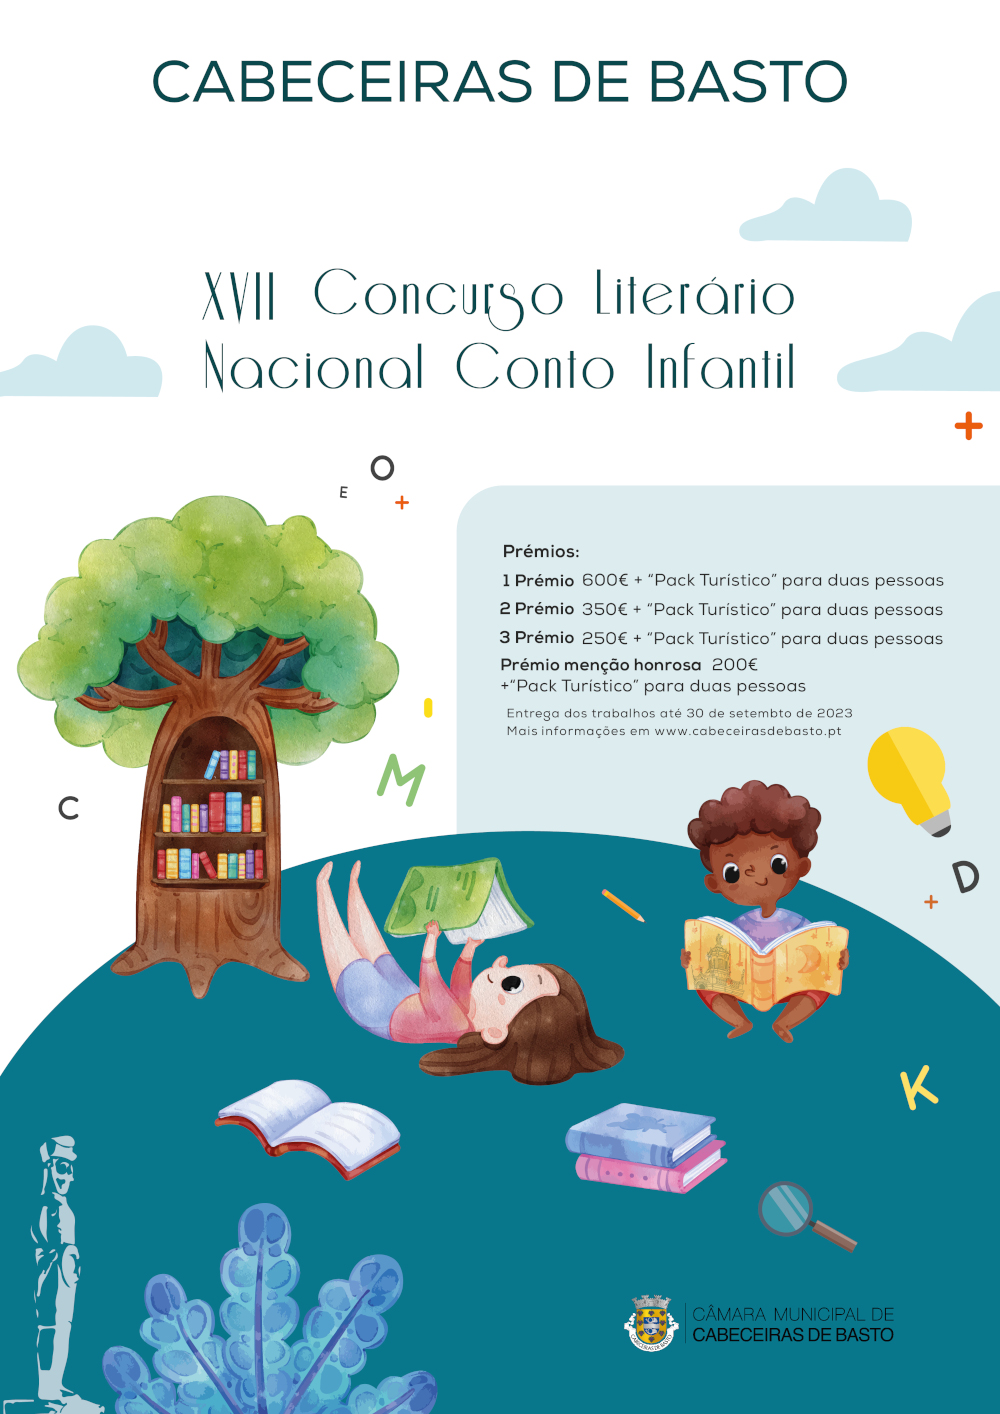 Leia mais sobre XVII Concurso Literário Nacional Conto Infantil